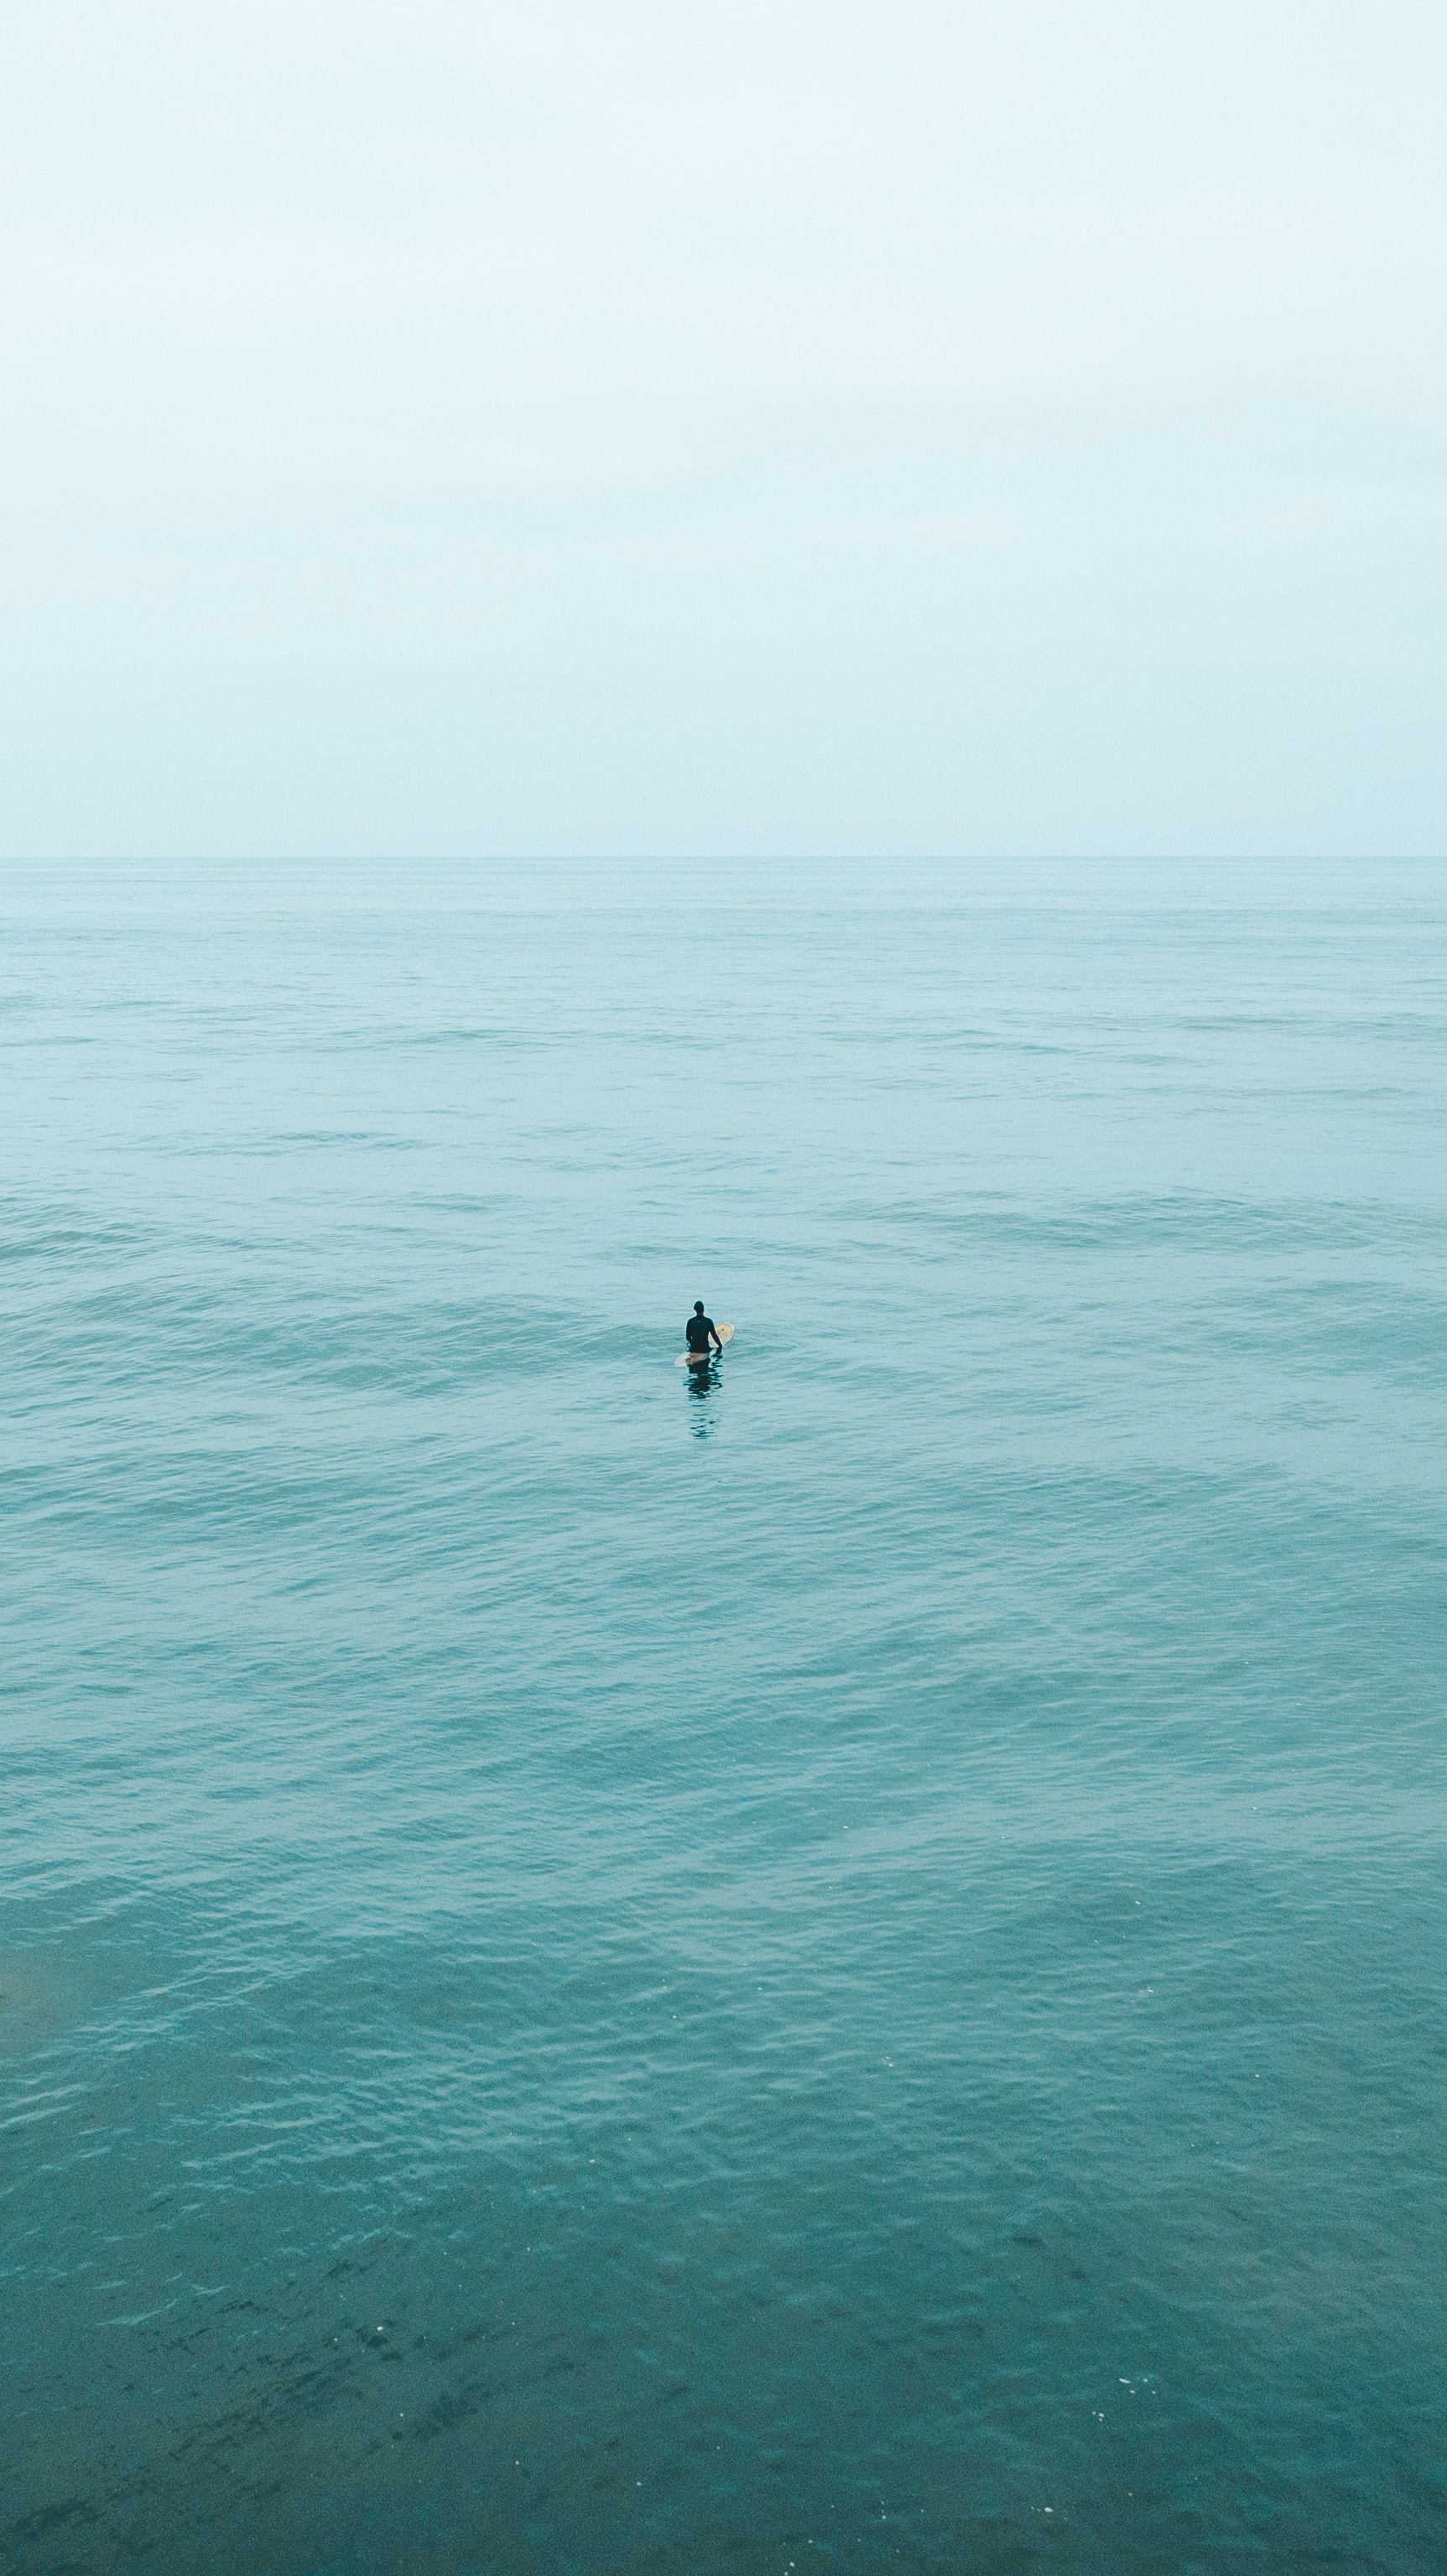 minimalism, water, waves, serfing, ocean, surfer